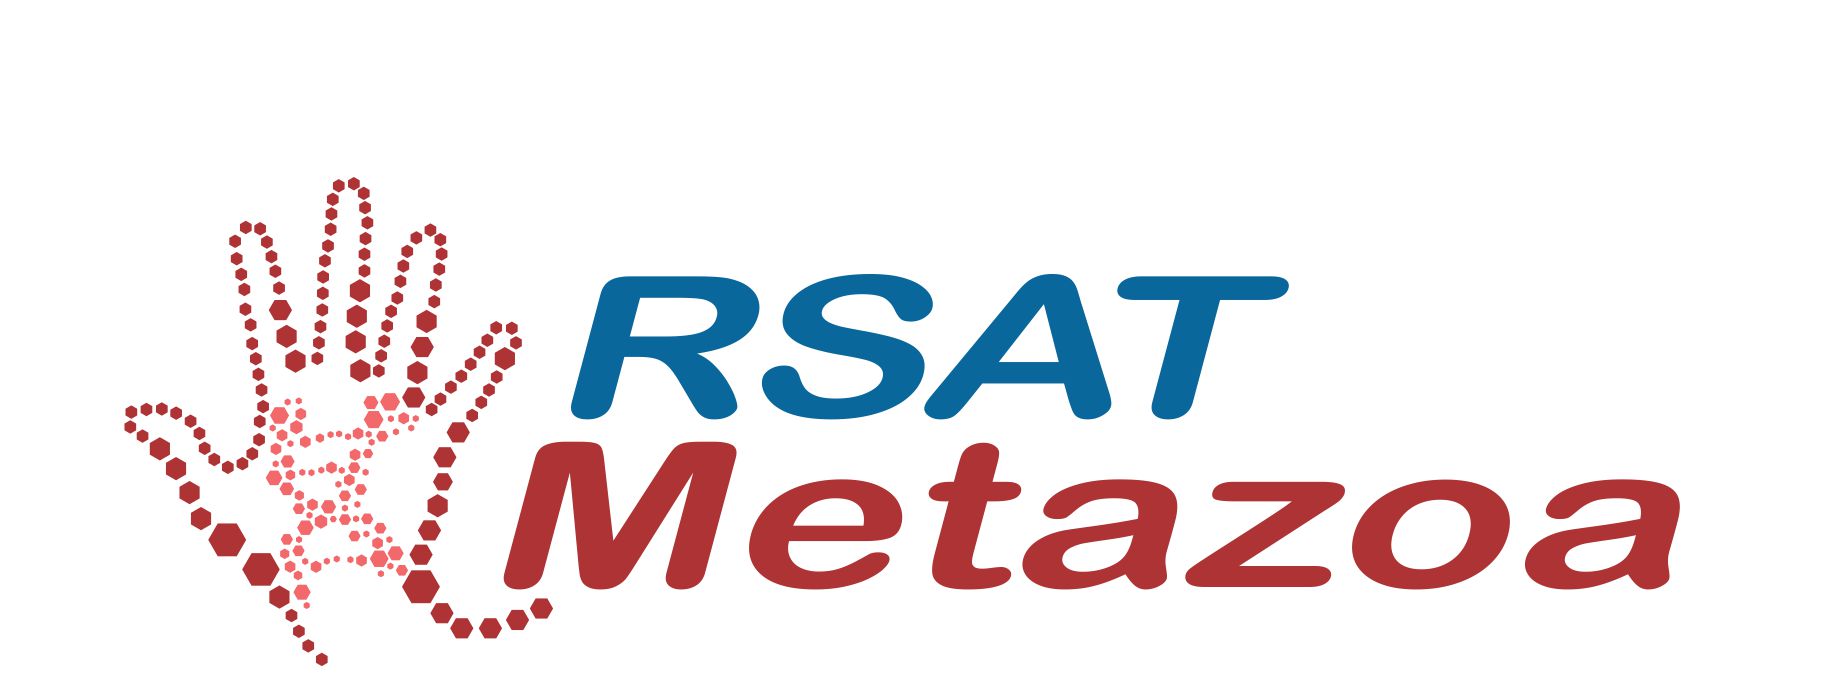 metazoa